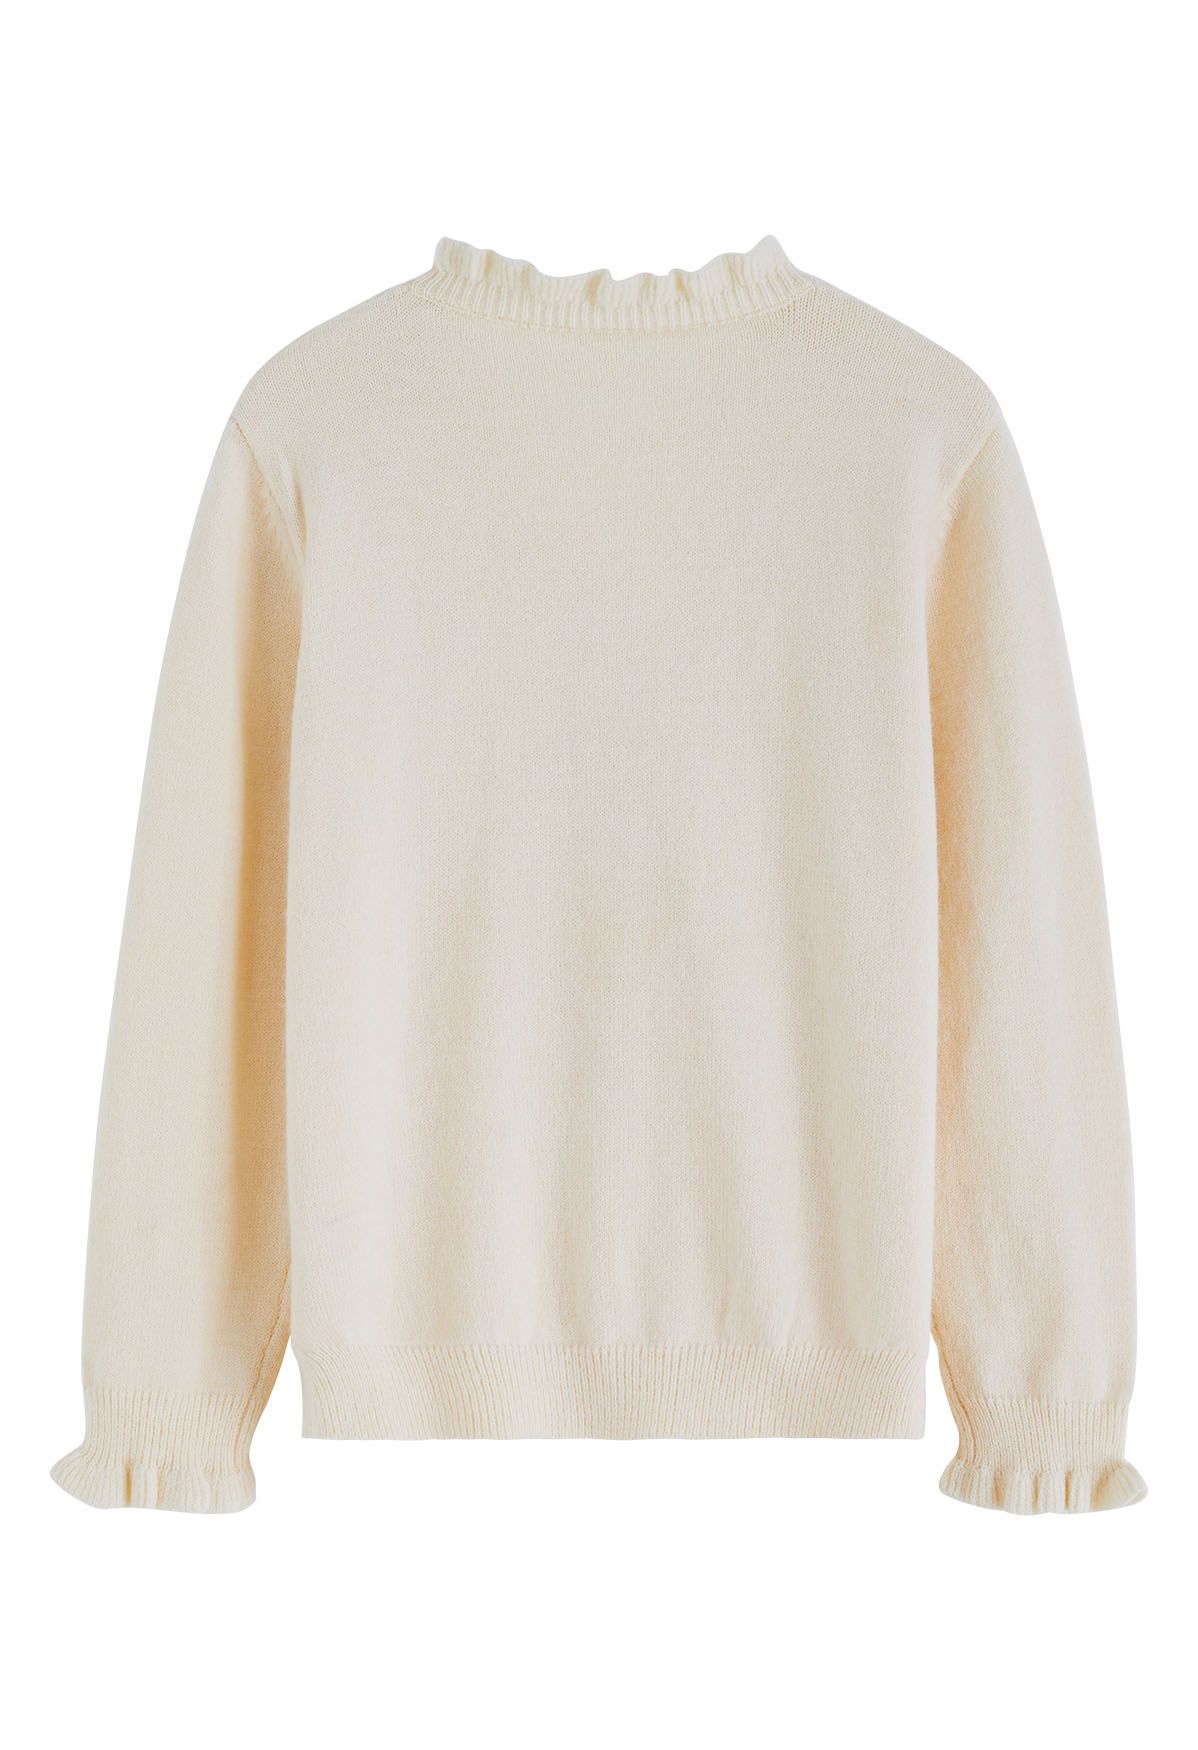 Suéter de punto con botones en la parte delantera y borde con volantes en color crema